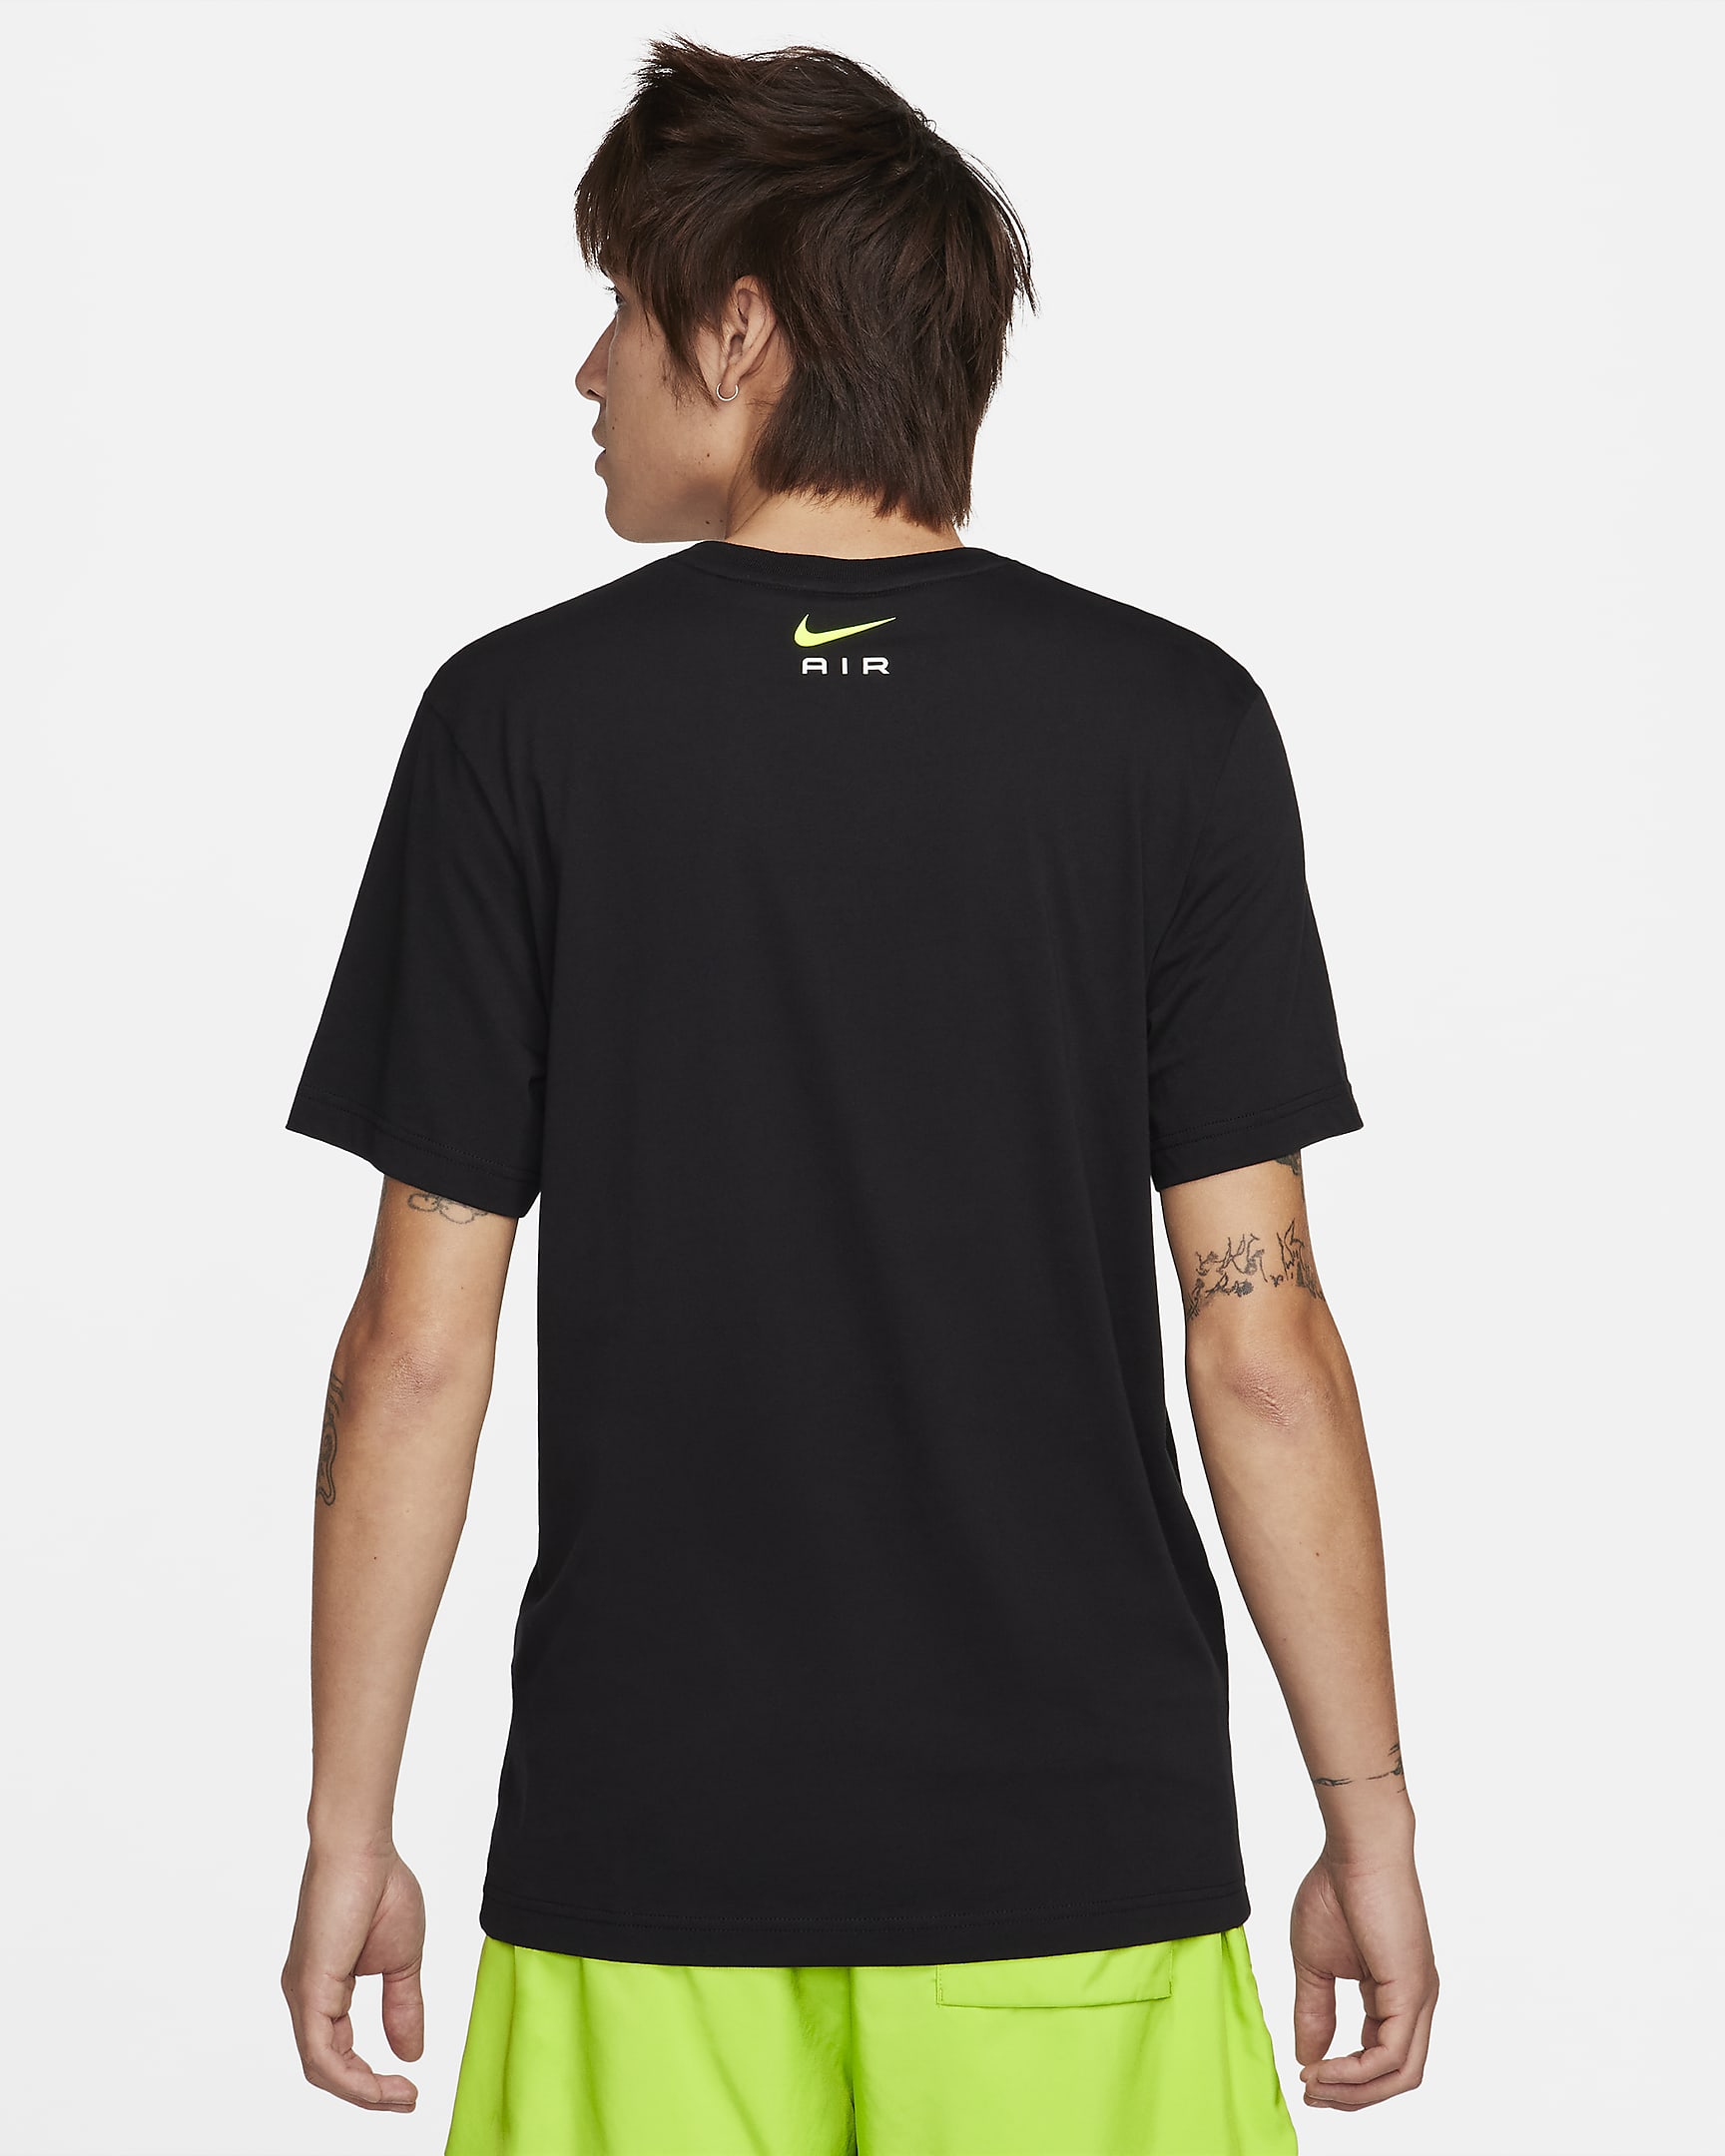 Nike Air Men's Graphic T-Shirt. Nike BG